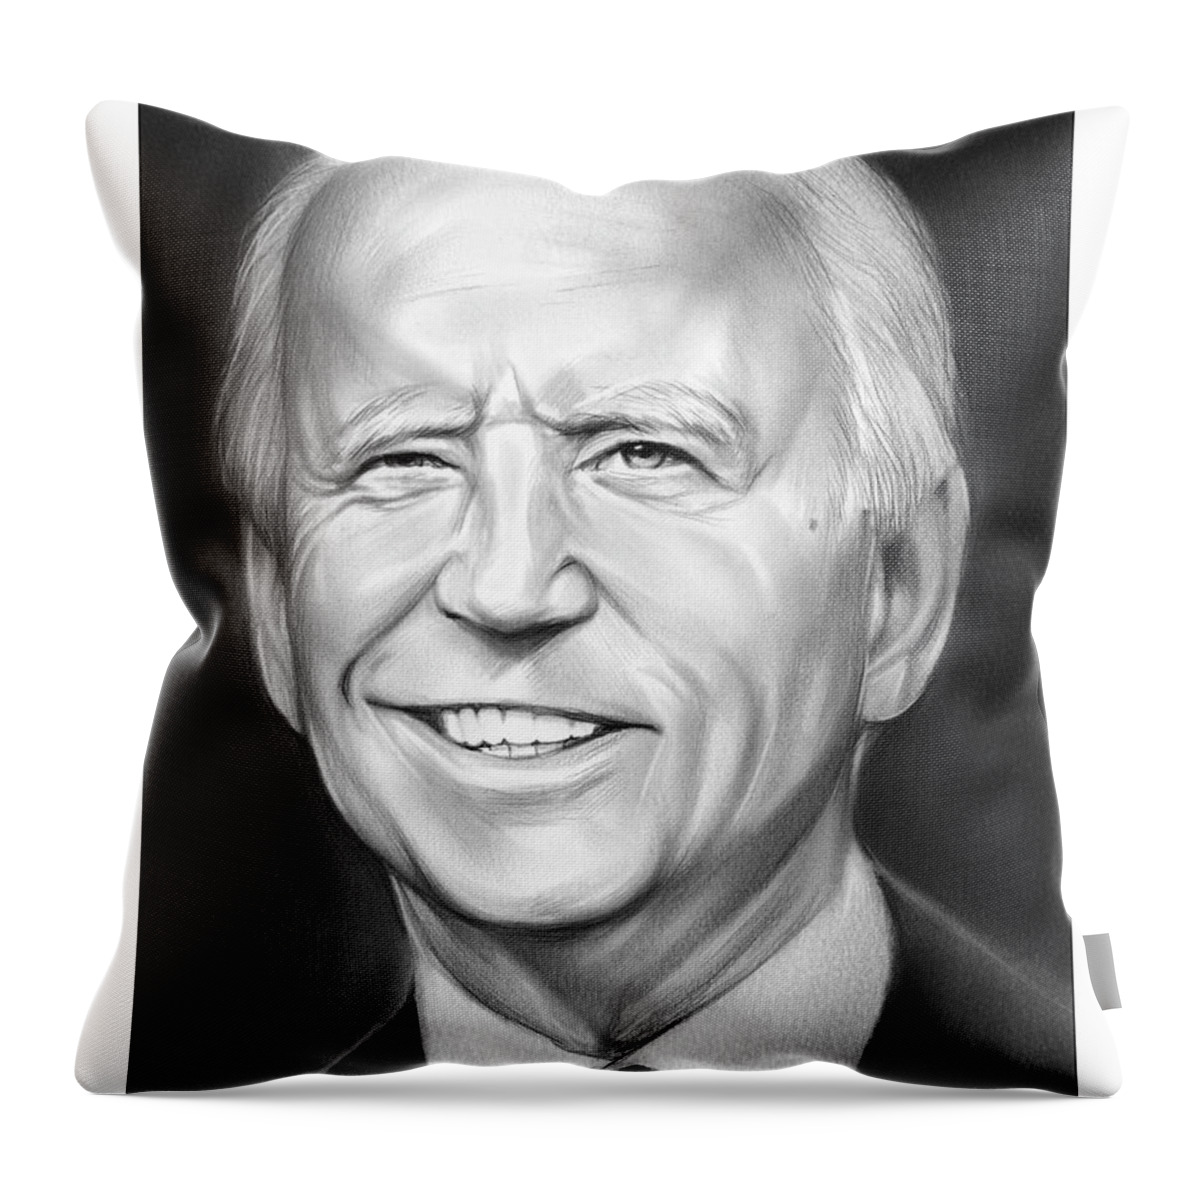 Joe Biden Throw Pillow featuring the drawing President Biden by Greg Joens